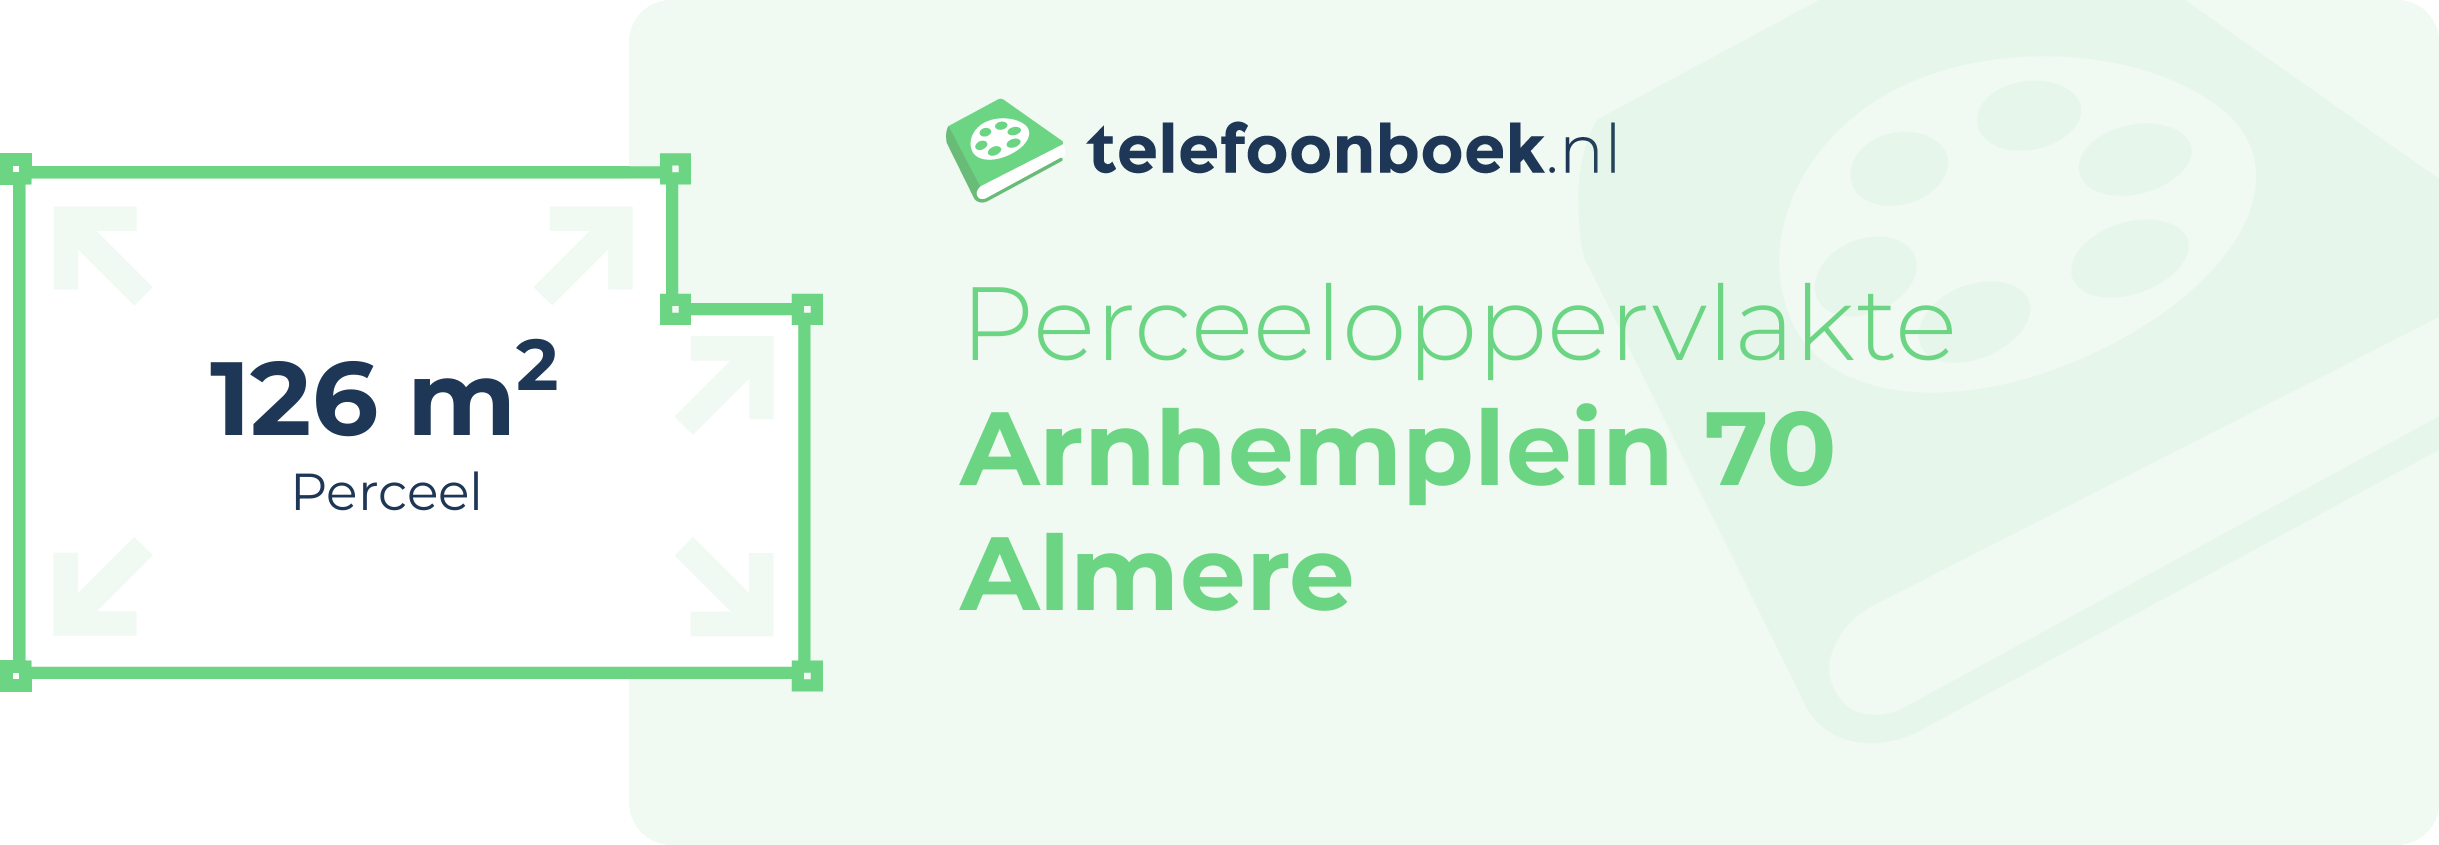 Perceeloppervlakte Arnhemplein 70 Almere